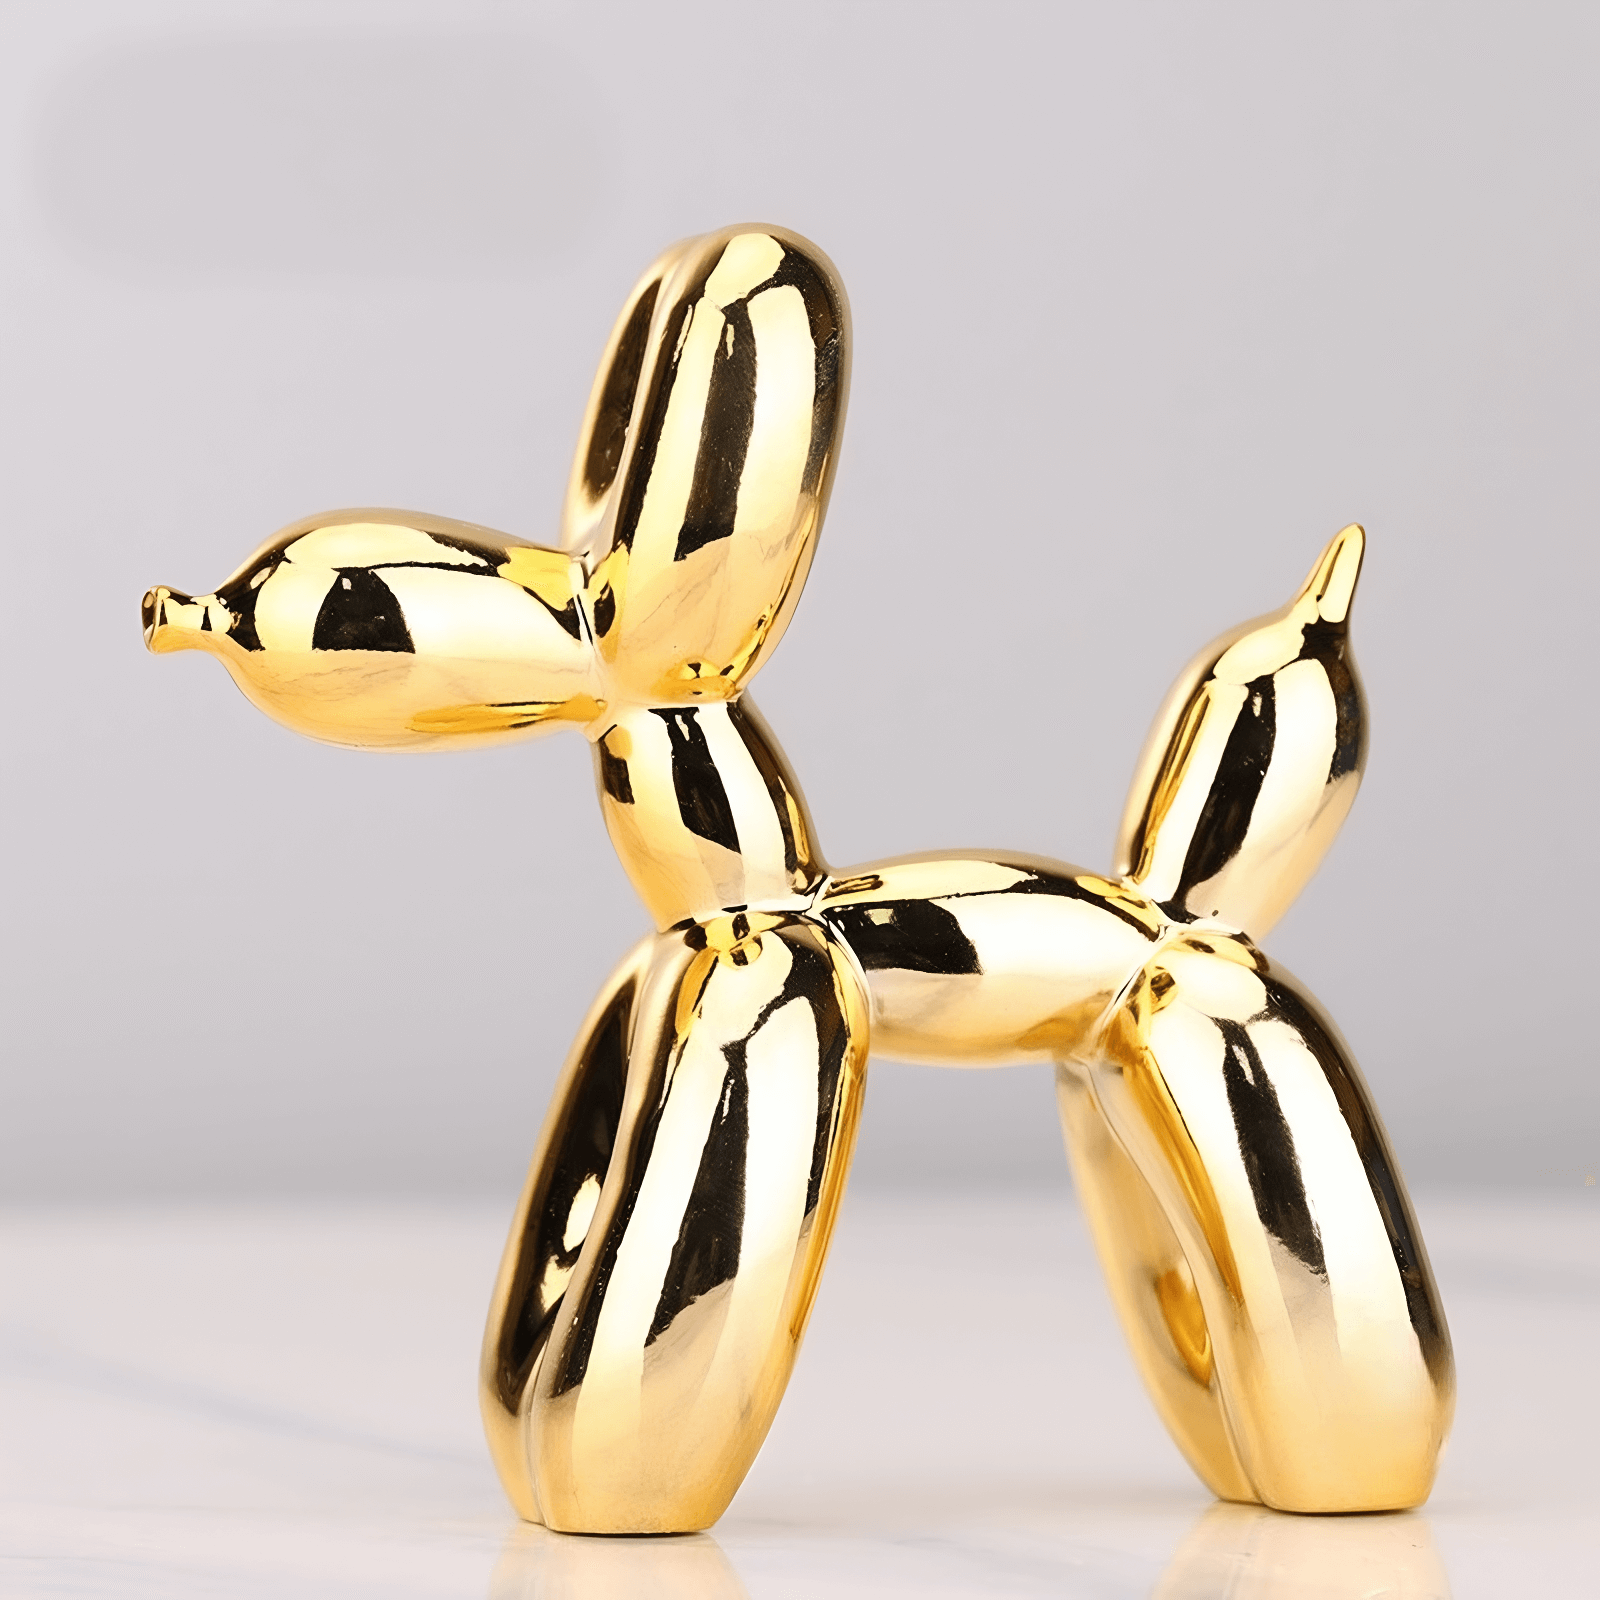 Gold balloon dog